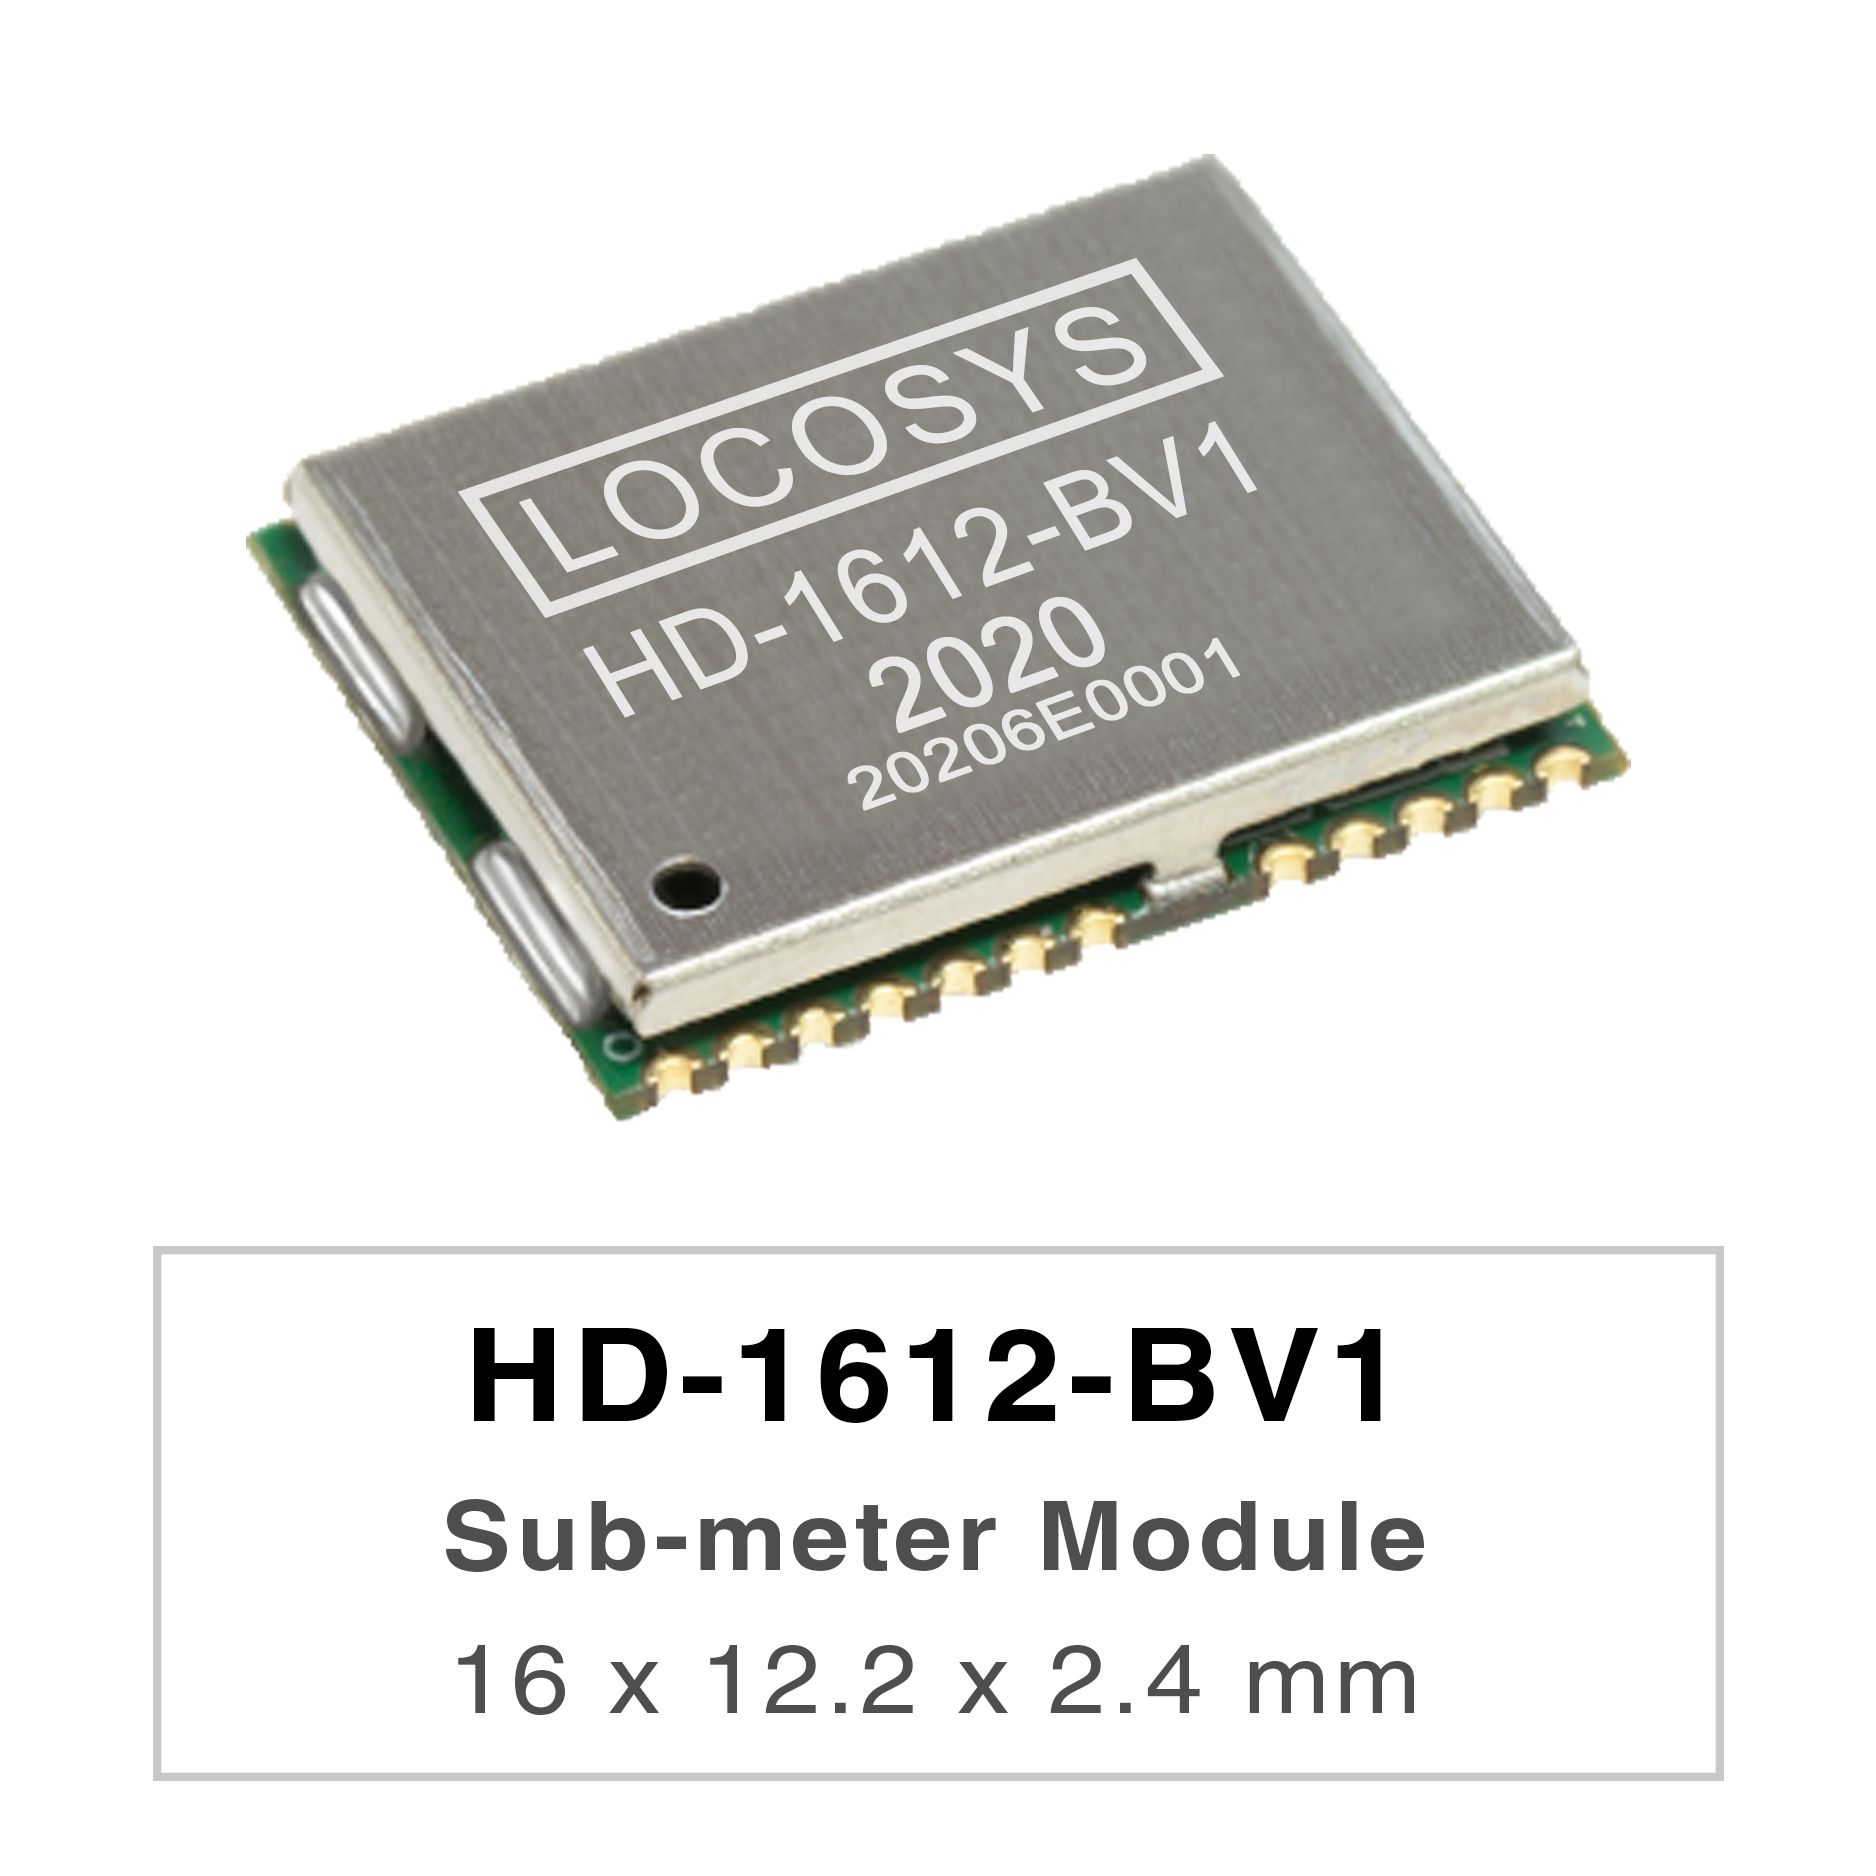 LOCOSYS HD-1612-BV1 est un module de positionnement GNSS haute performance capable de suivre
<br />tous les systèmes mondiaux de navigation civile (GPS, QZSS, GLONASS, BEIDOU et GALILEO).